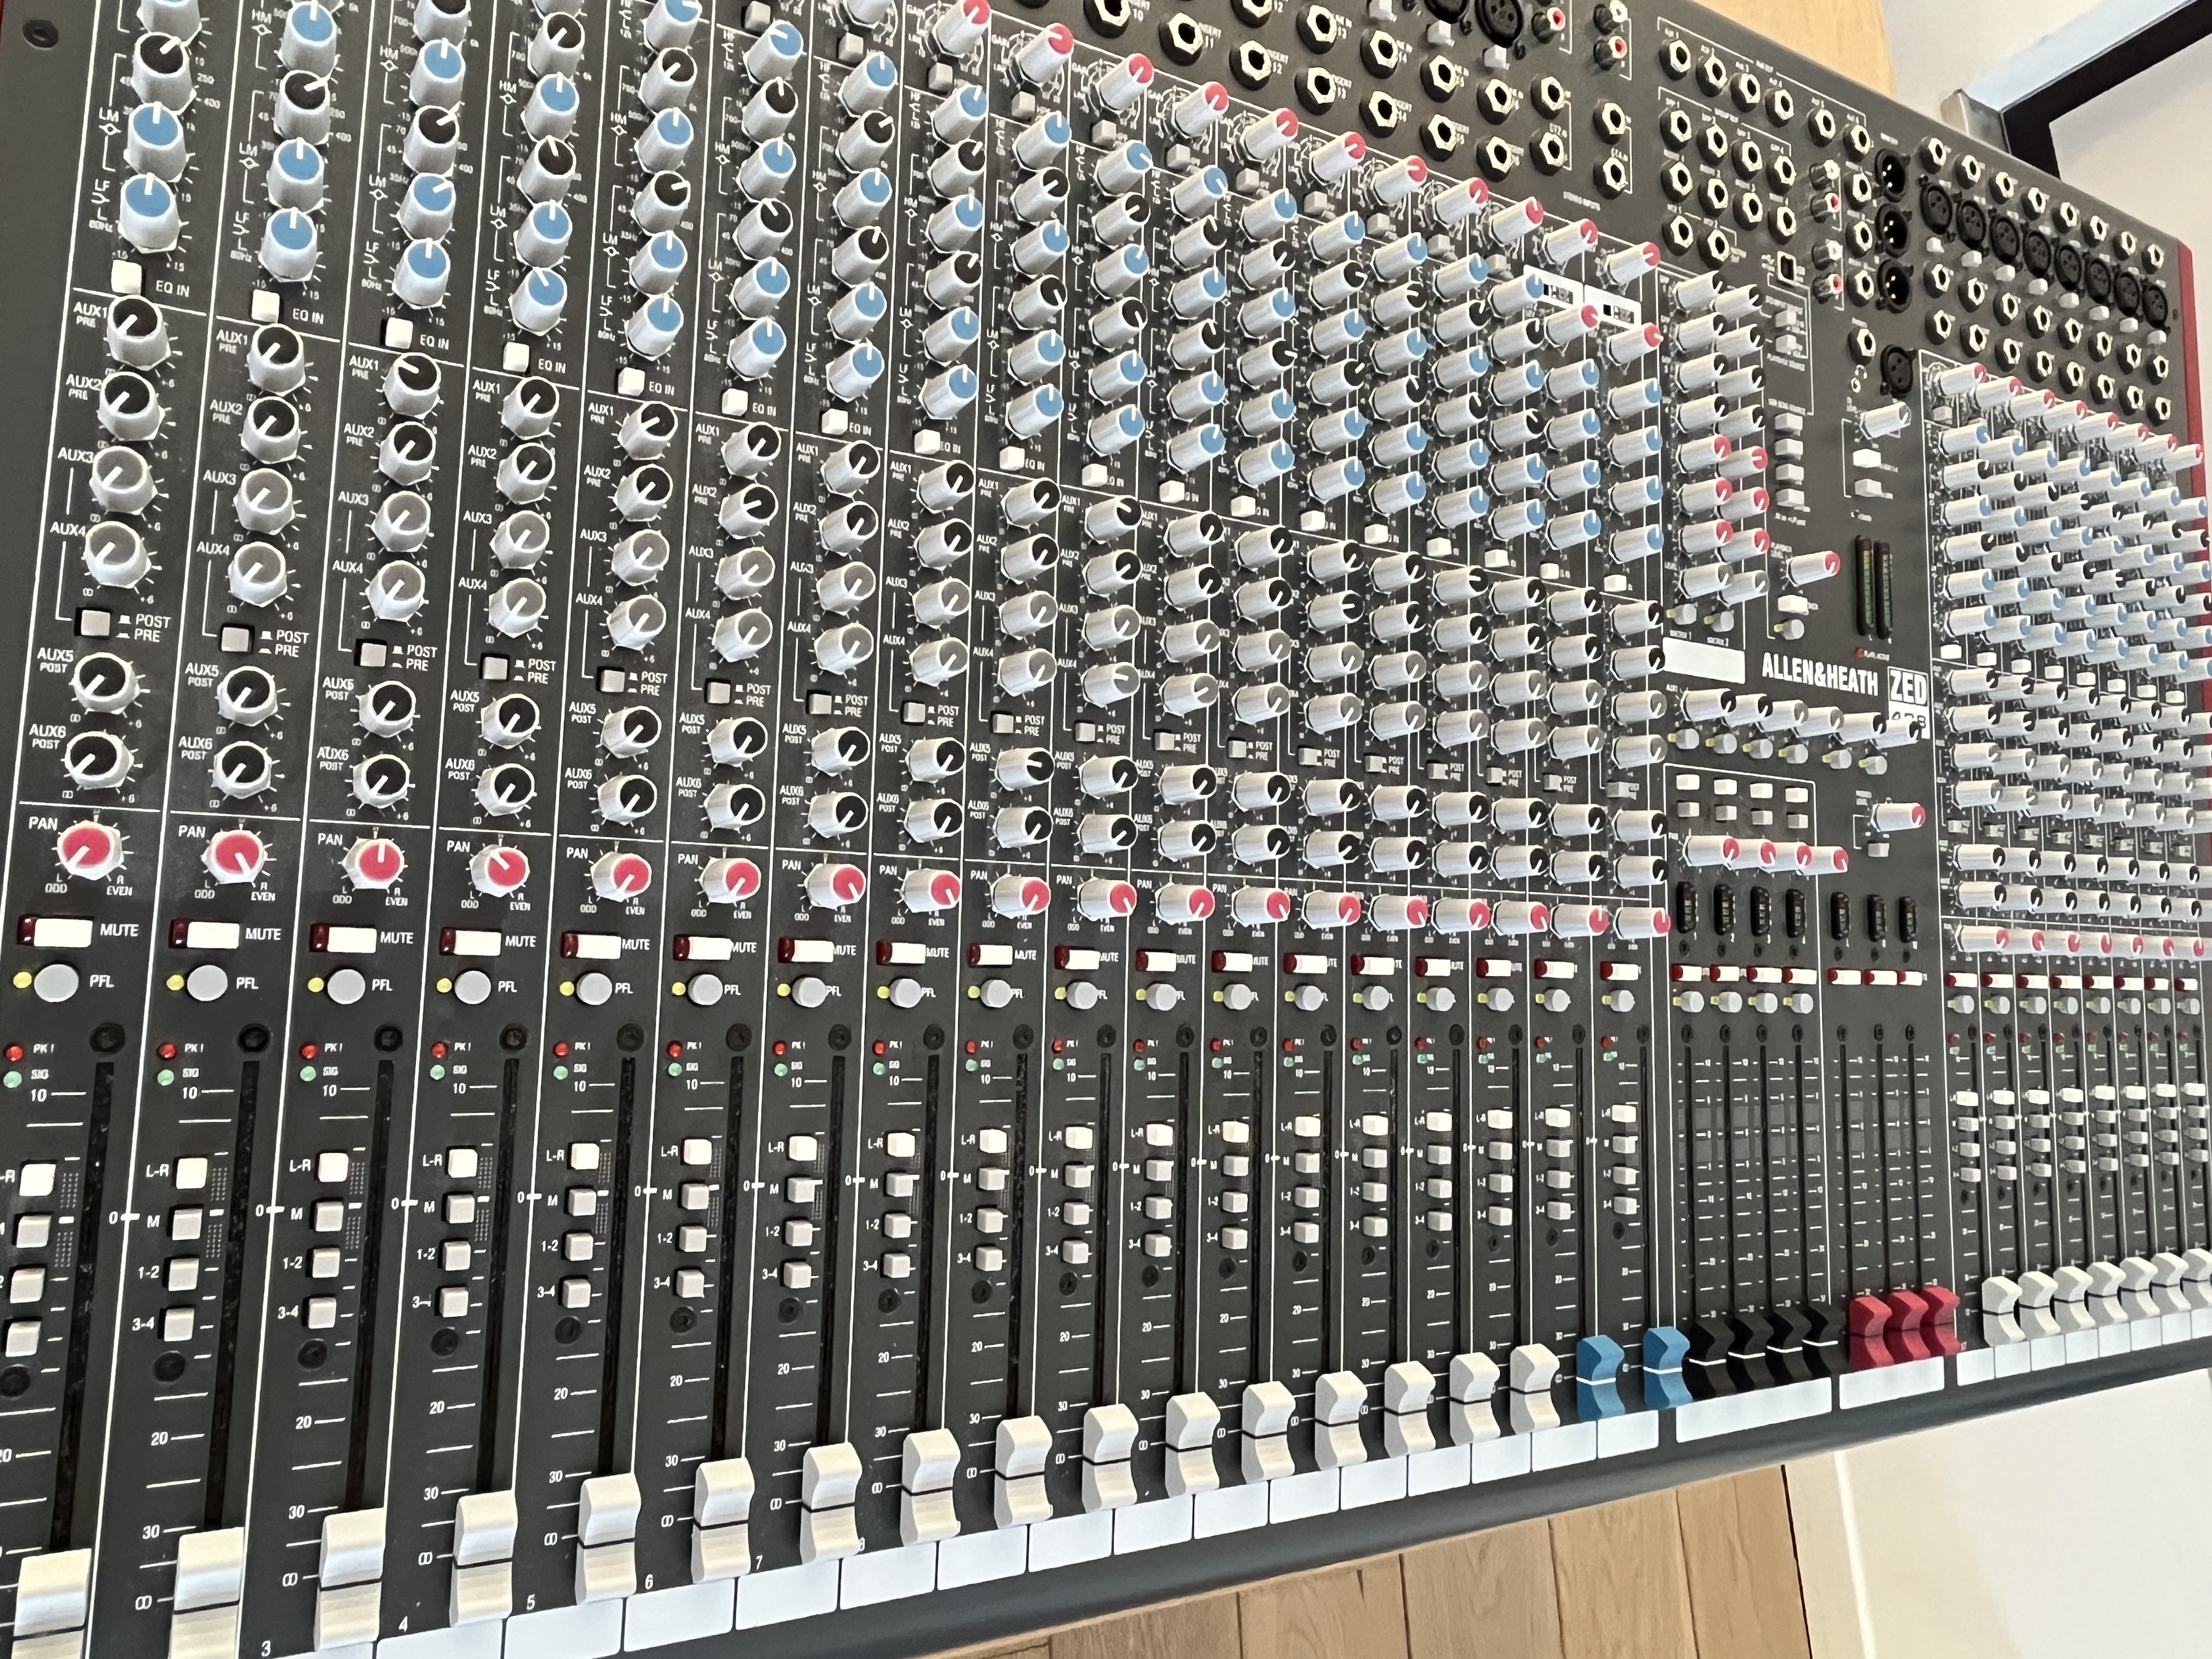 Allen & Heath ZED 428 console de mixage enregistrement/sono